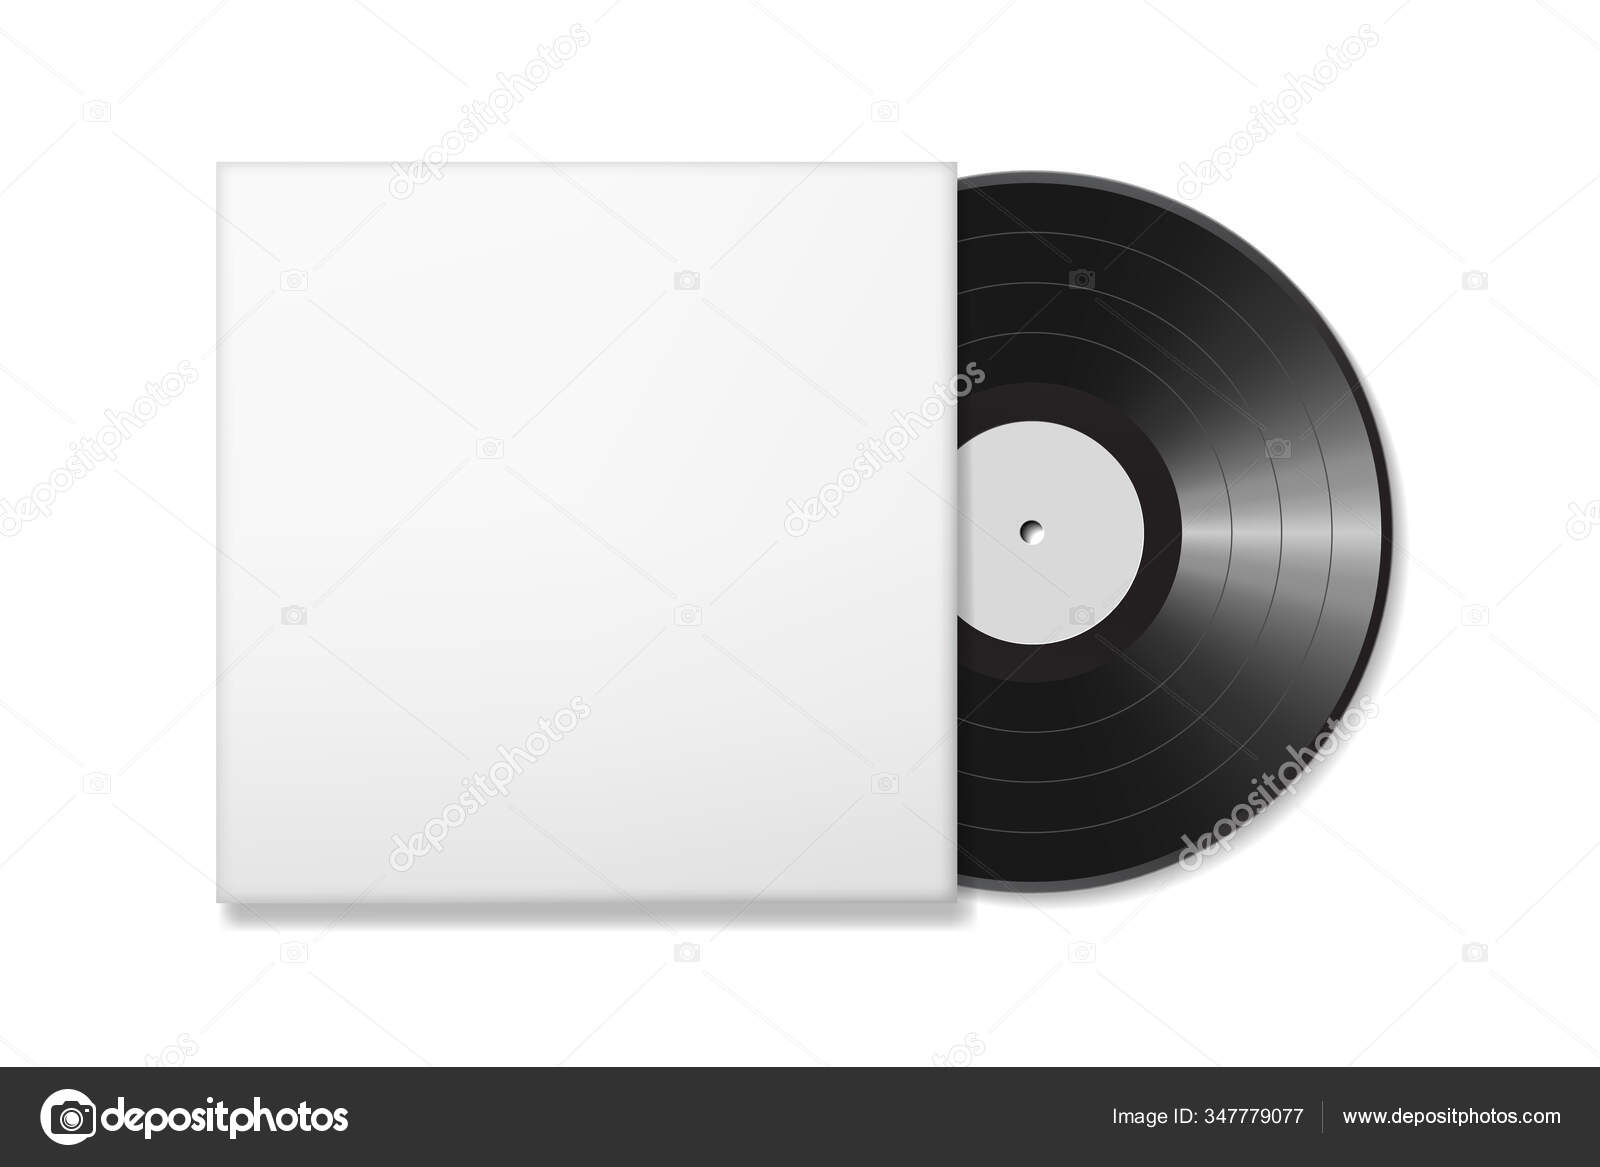 Vinyl Record Mockup Images Vectorielles Vinyl Record Mockup Vecteurs Libres De Droits Depositphotos